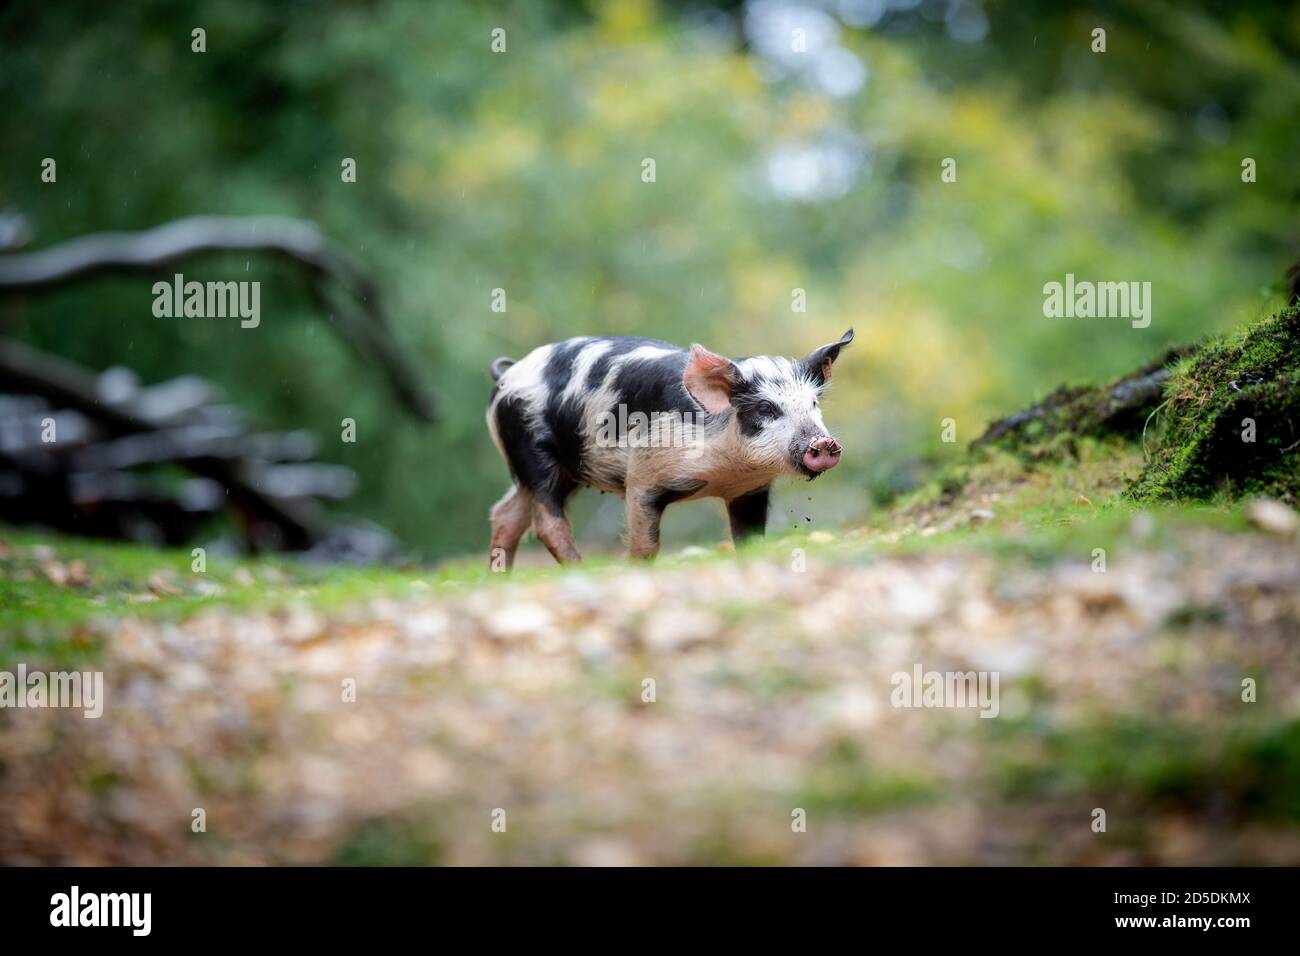 Les porcelets et les porcs se nourrissent sur le sol forestier de la Nouvelle forêt à la recherche d'acornes et d'autres noix dans le cadre de la saison de la pêche lorsque les porcs se déplacent librement. Banque D'Images